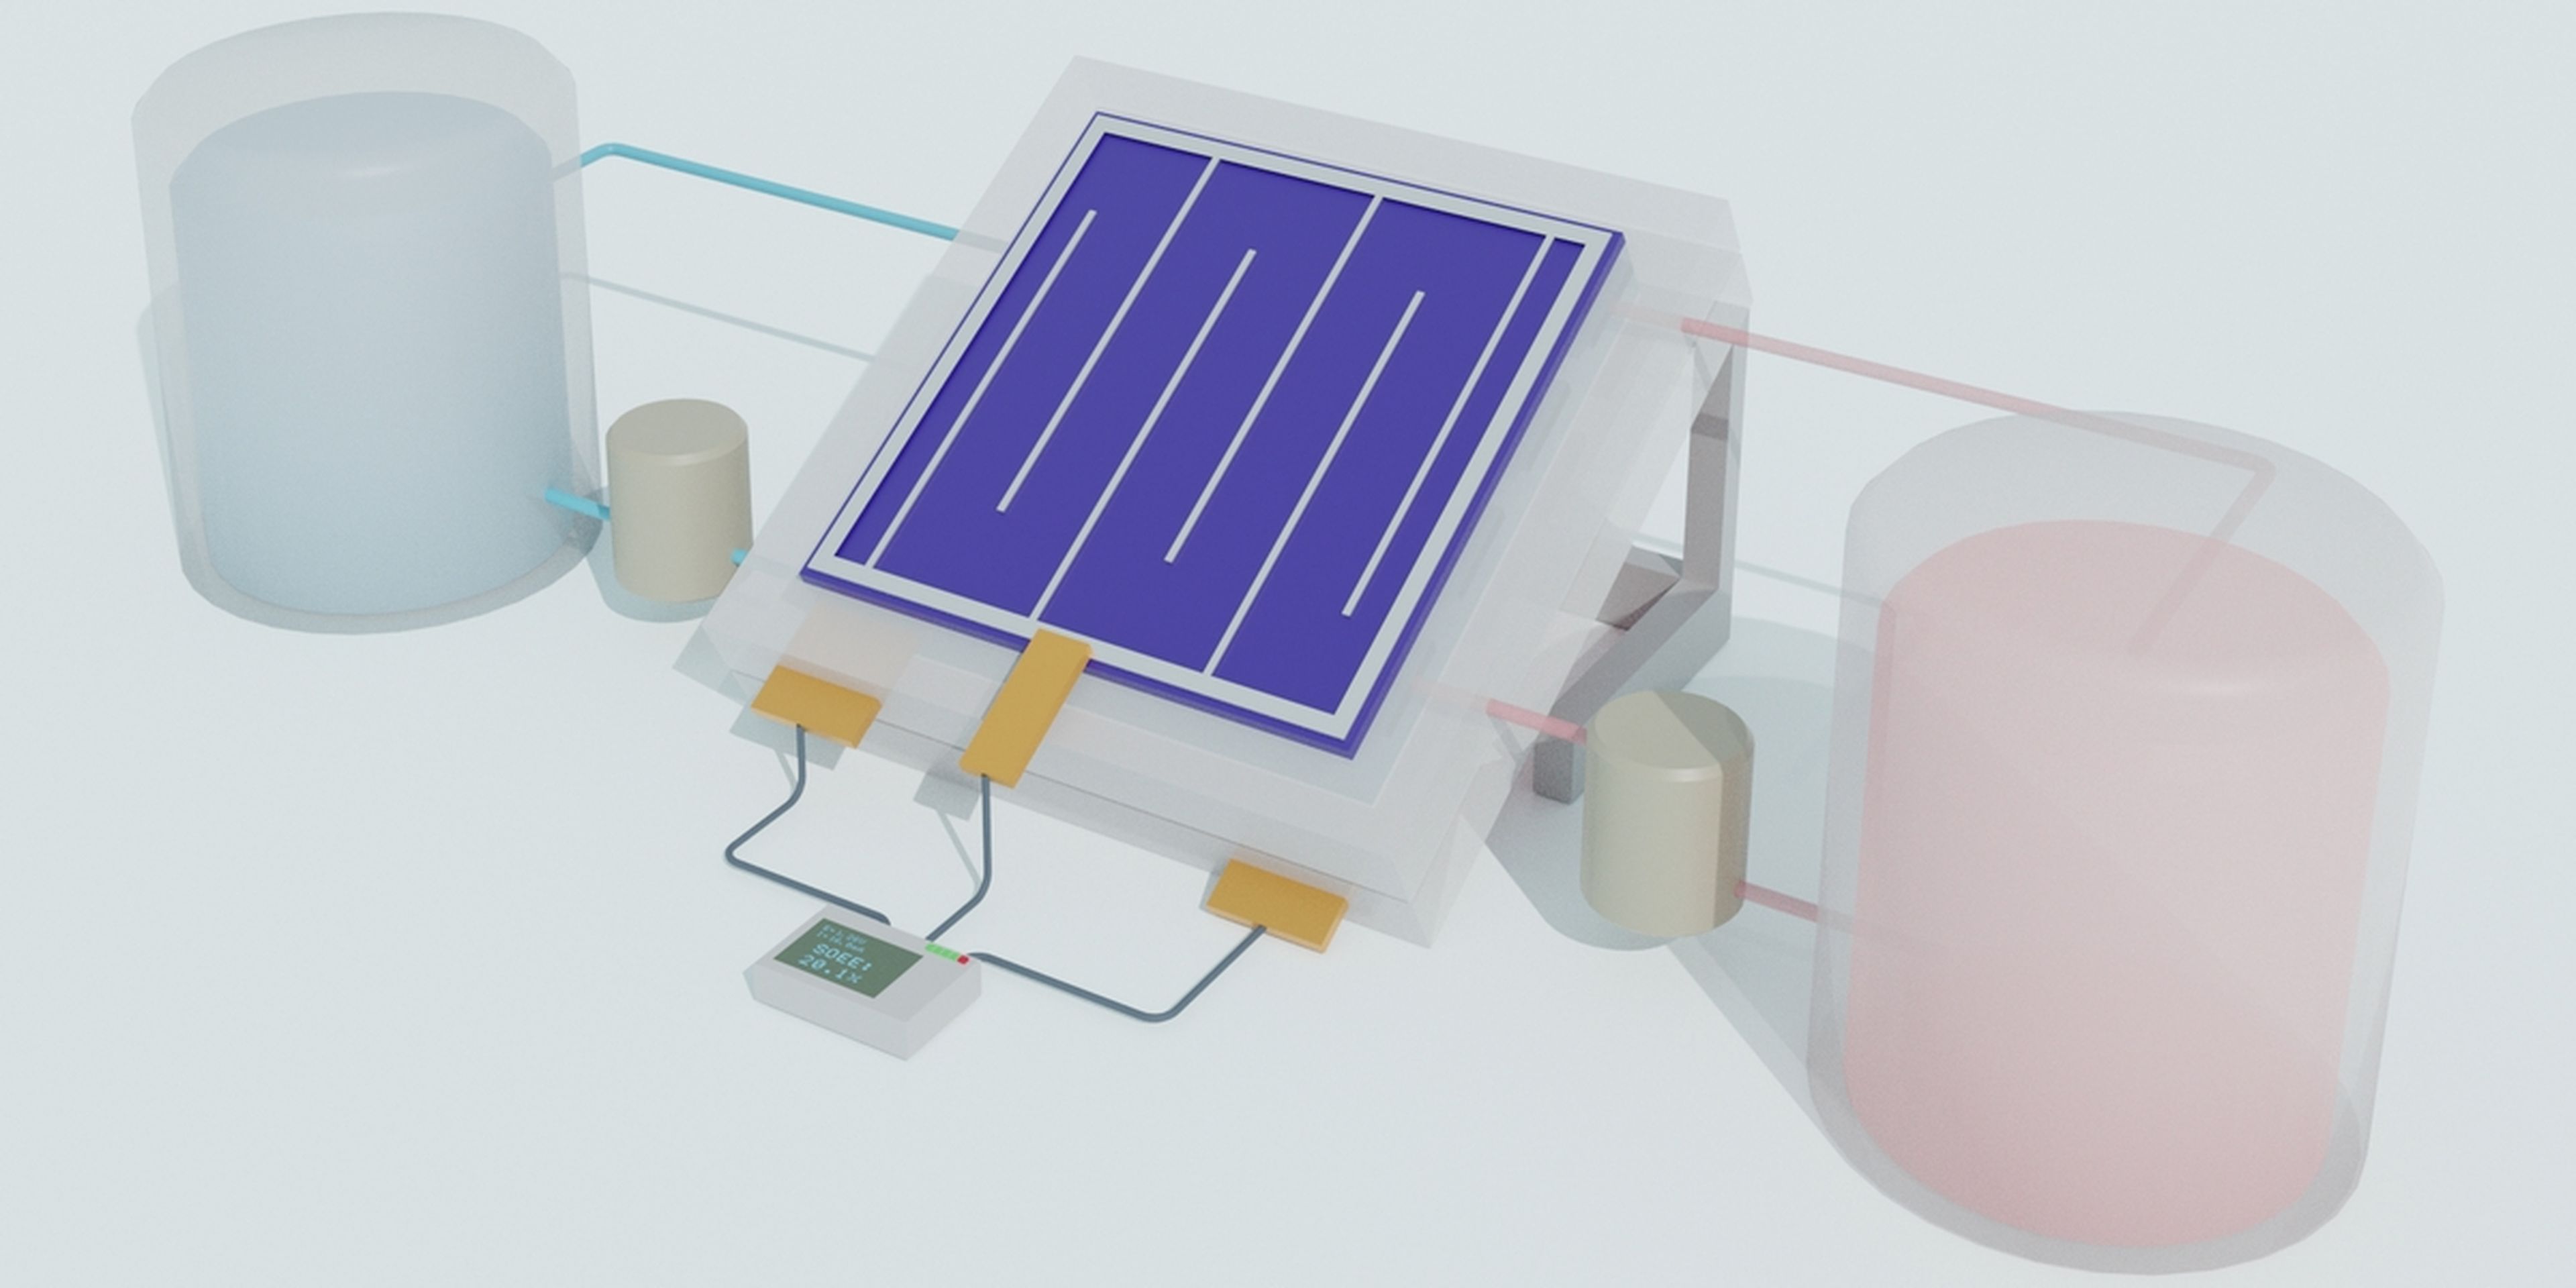 Esta batería de flujo solar convierte la energía solar en líquido para almacenarla indefinidamente